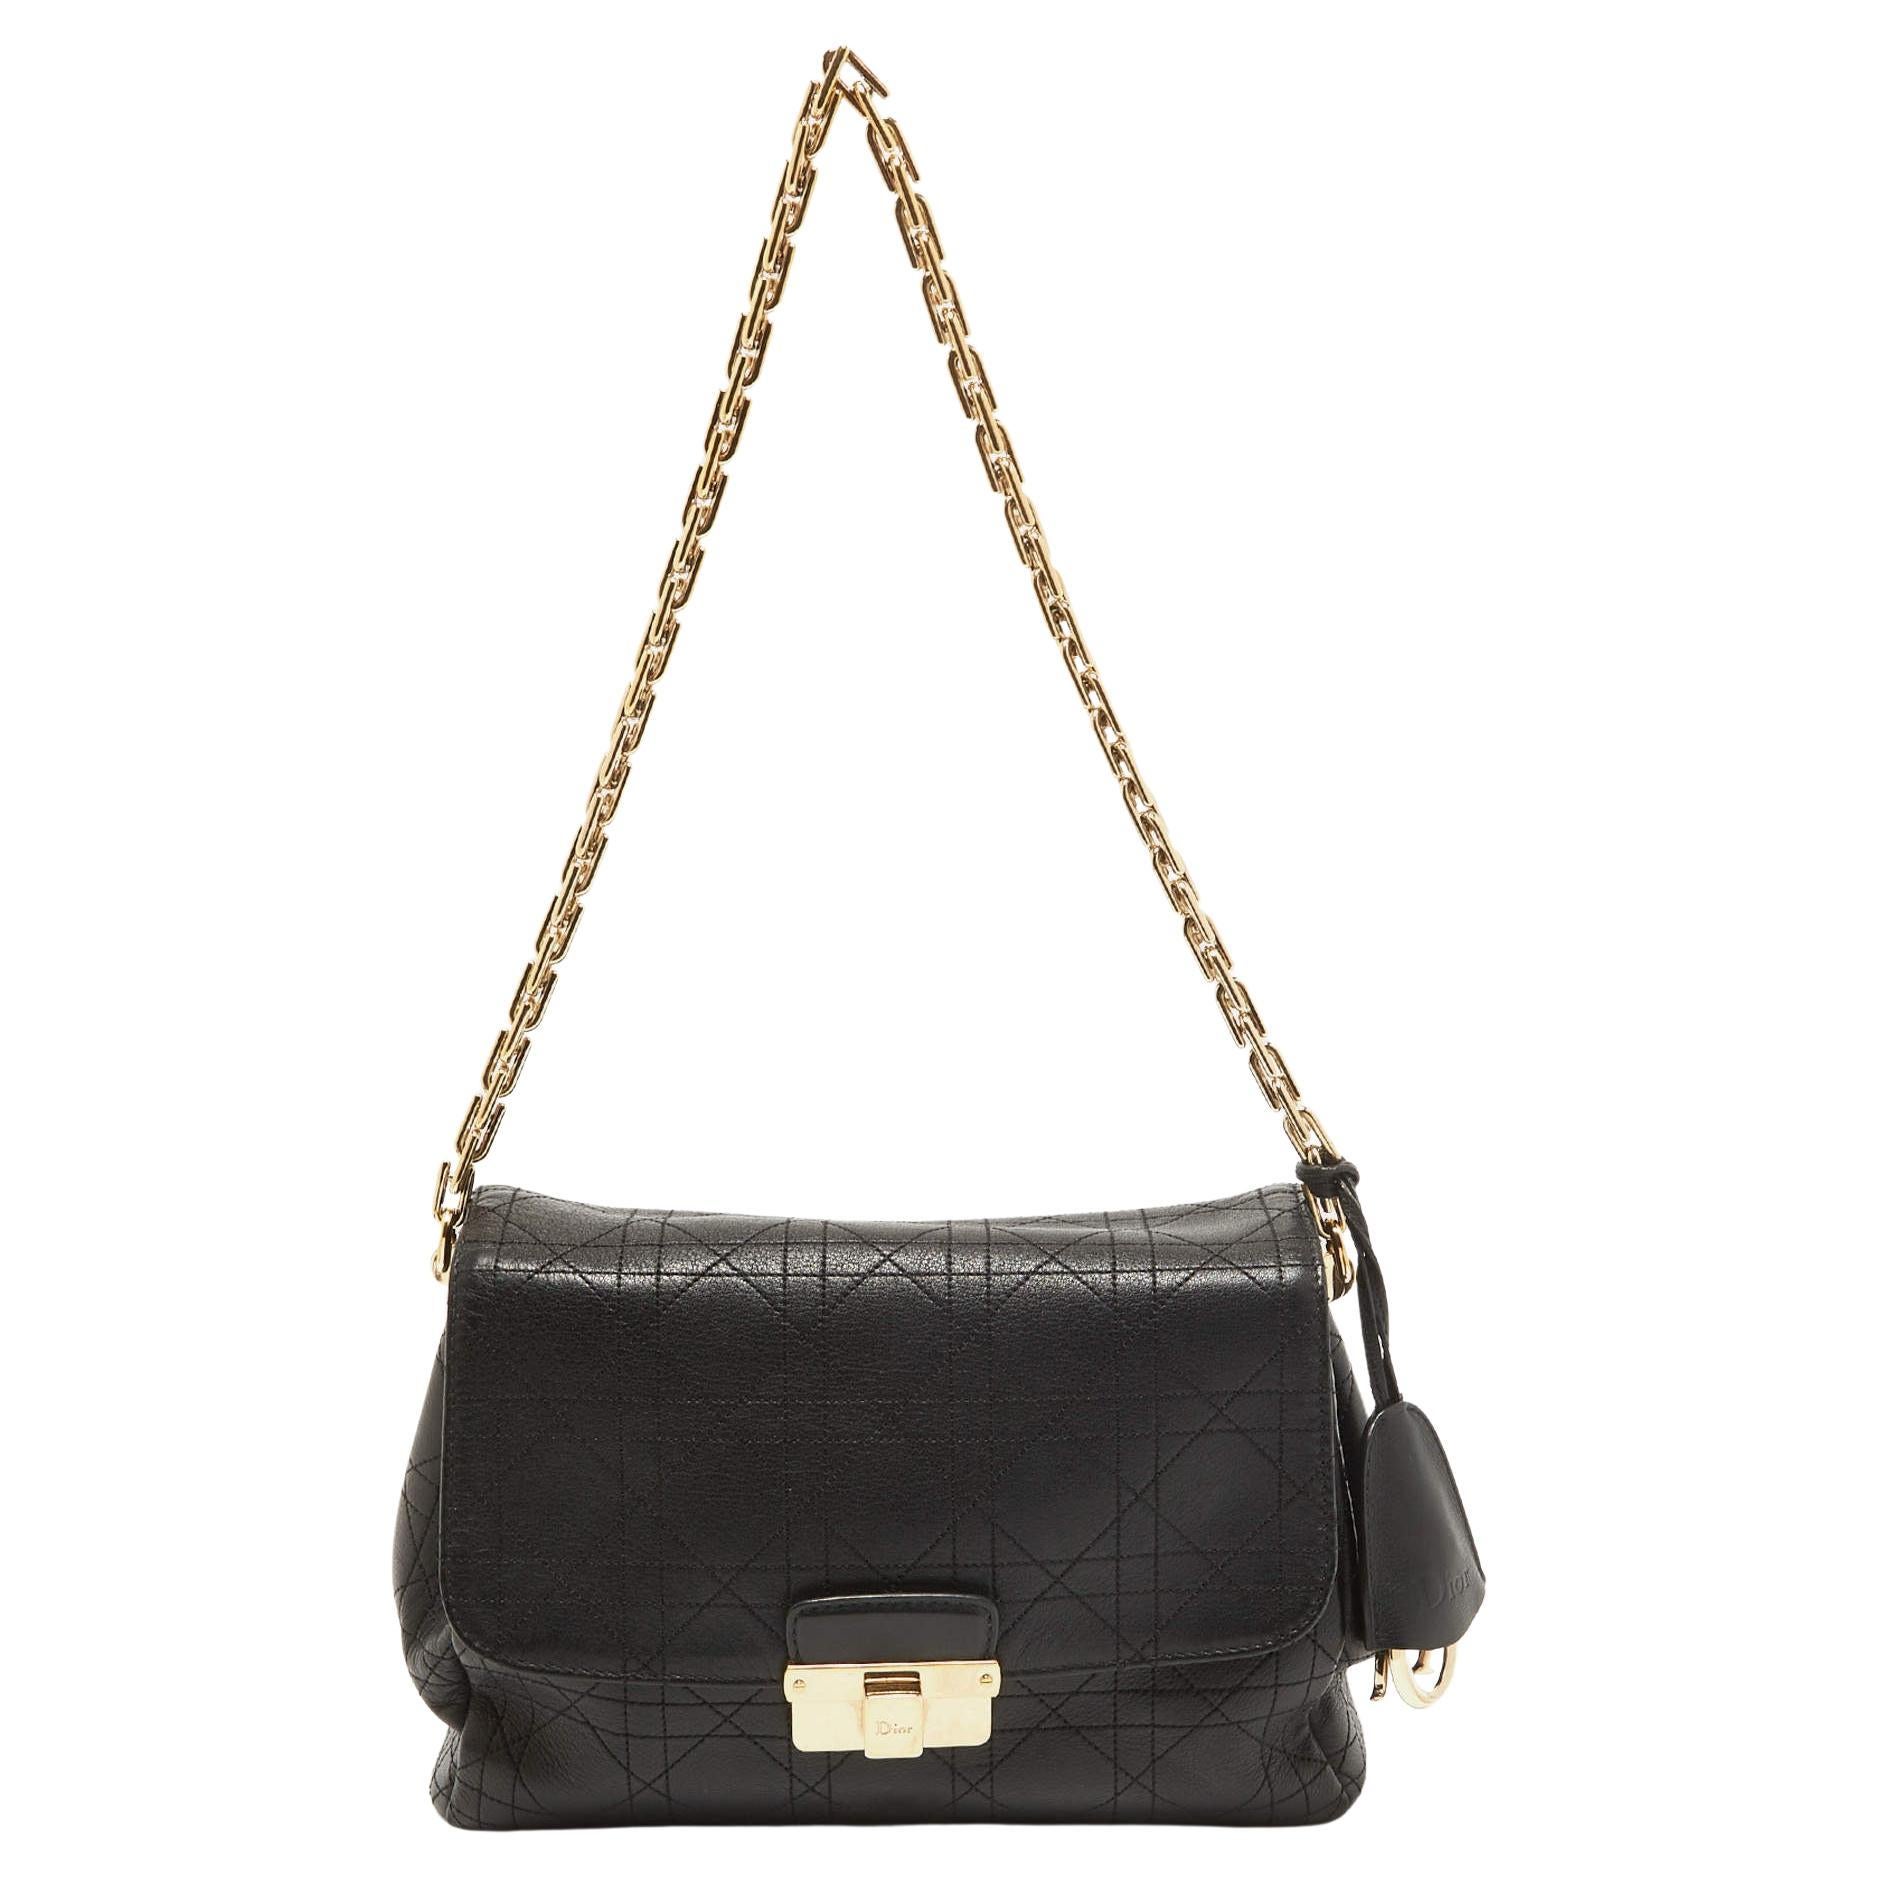 Dior Black Cannage Leather Miss Dior Shoulder Bag